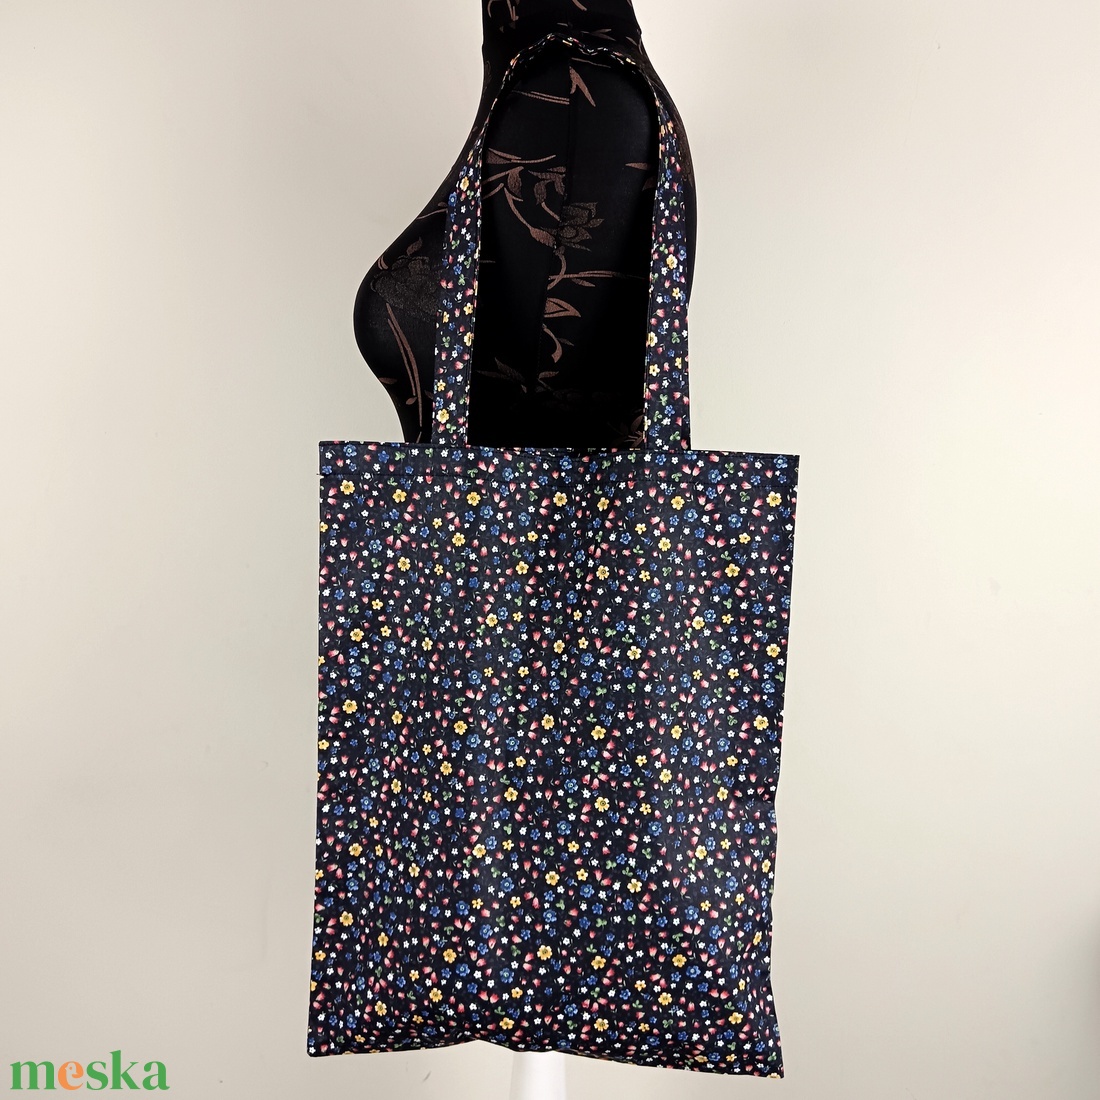 Szatyor - virág mintás textil táska - bevásárló táska  - egyedi bevásárló szatyor - textil szatyor - mosható szatyor - táska & tok - bevásárlás & shopper táska - shopper, textiltáska, szatyor - Meska.hu